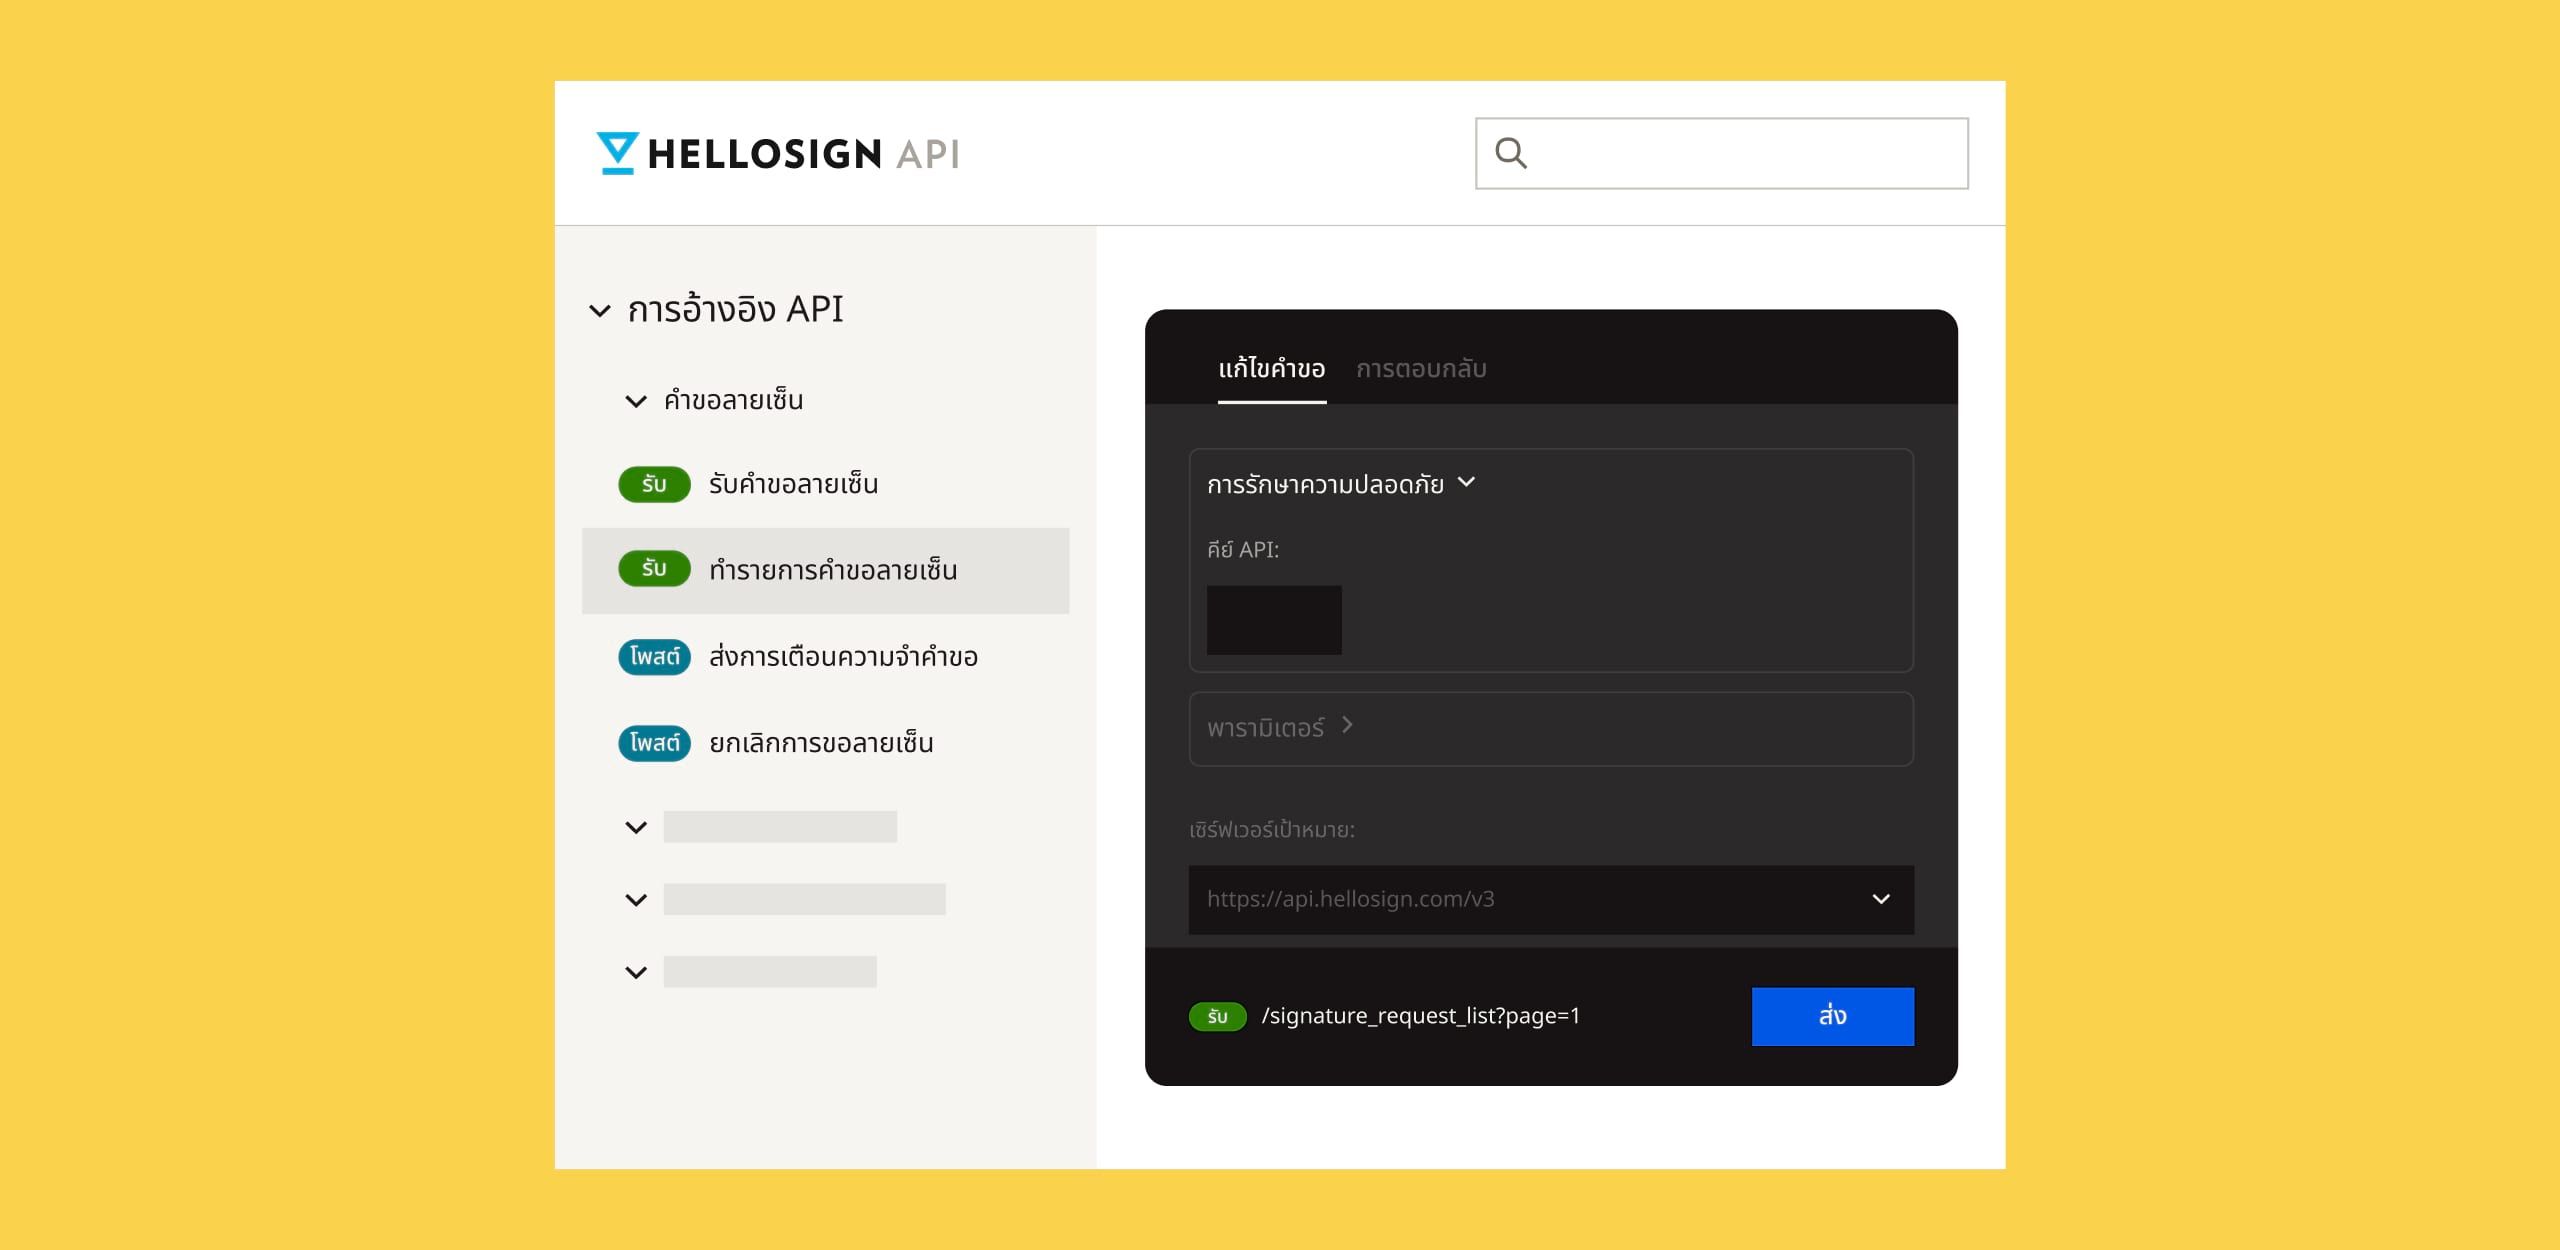 หน้าจอการอ้างอิง HelloSign API พร้อมข้อความสีขาวจางๆ บนพื้นหลังสีดำ